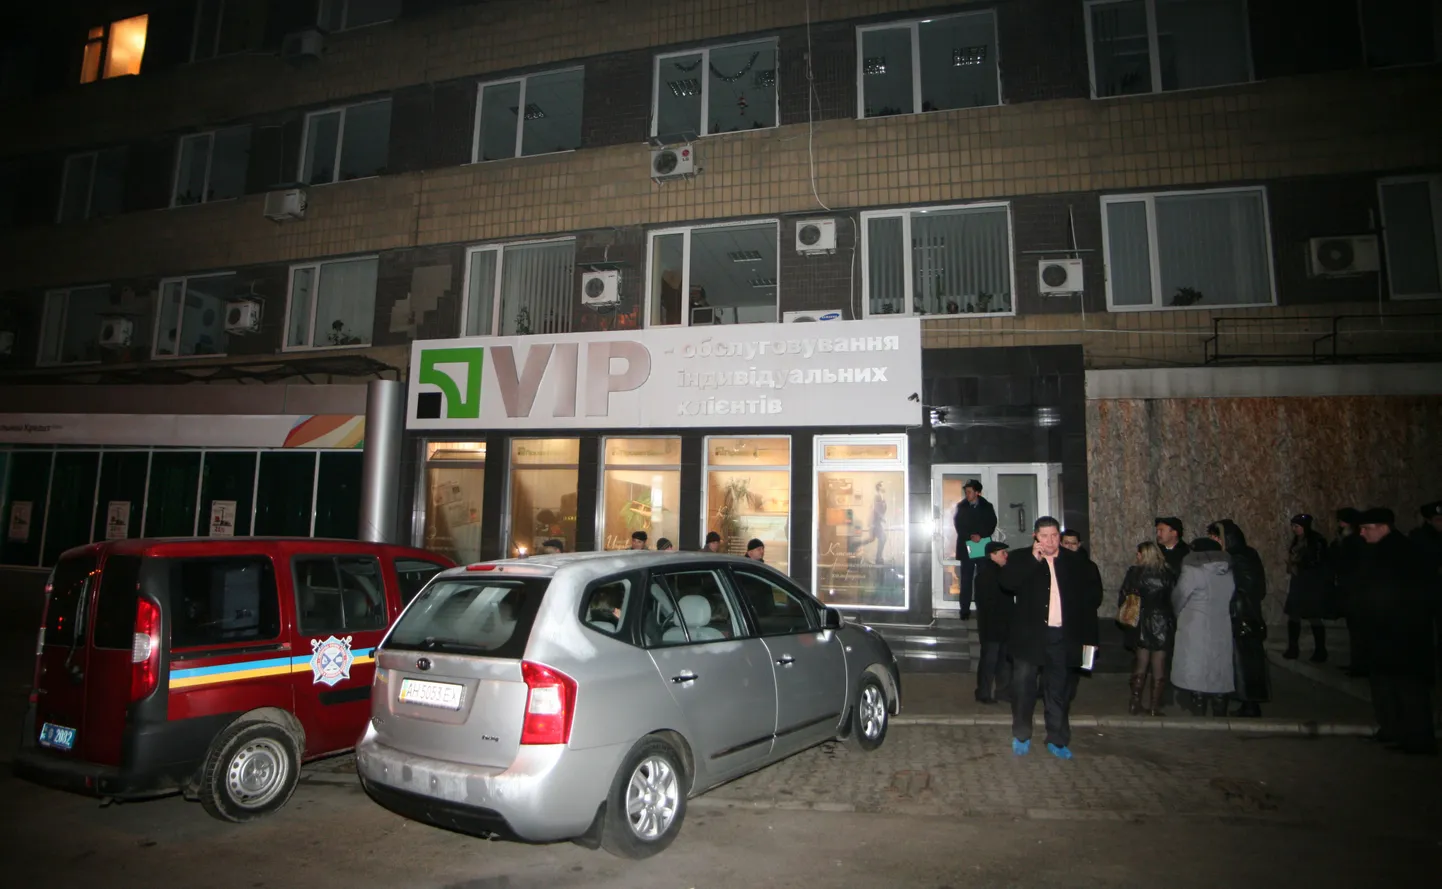 PrivatBanki kontor Donetski kesklinnas, kus lasti maha viis pangatöötajat.